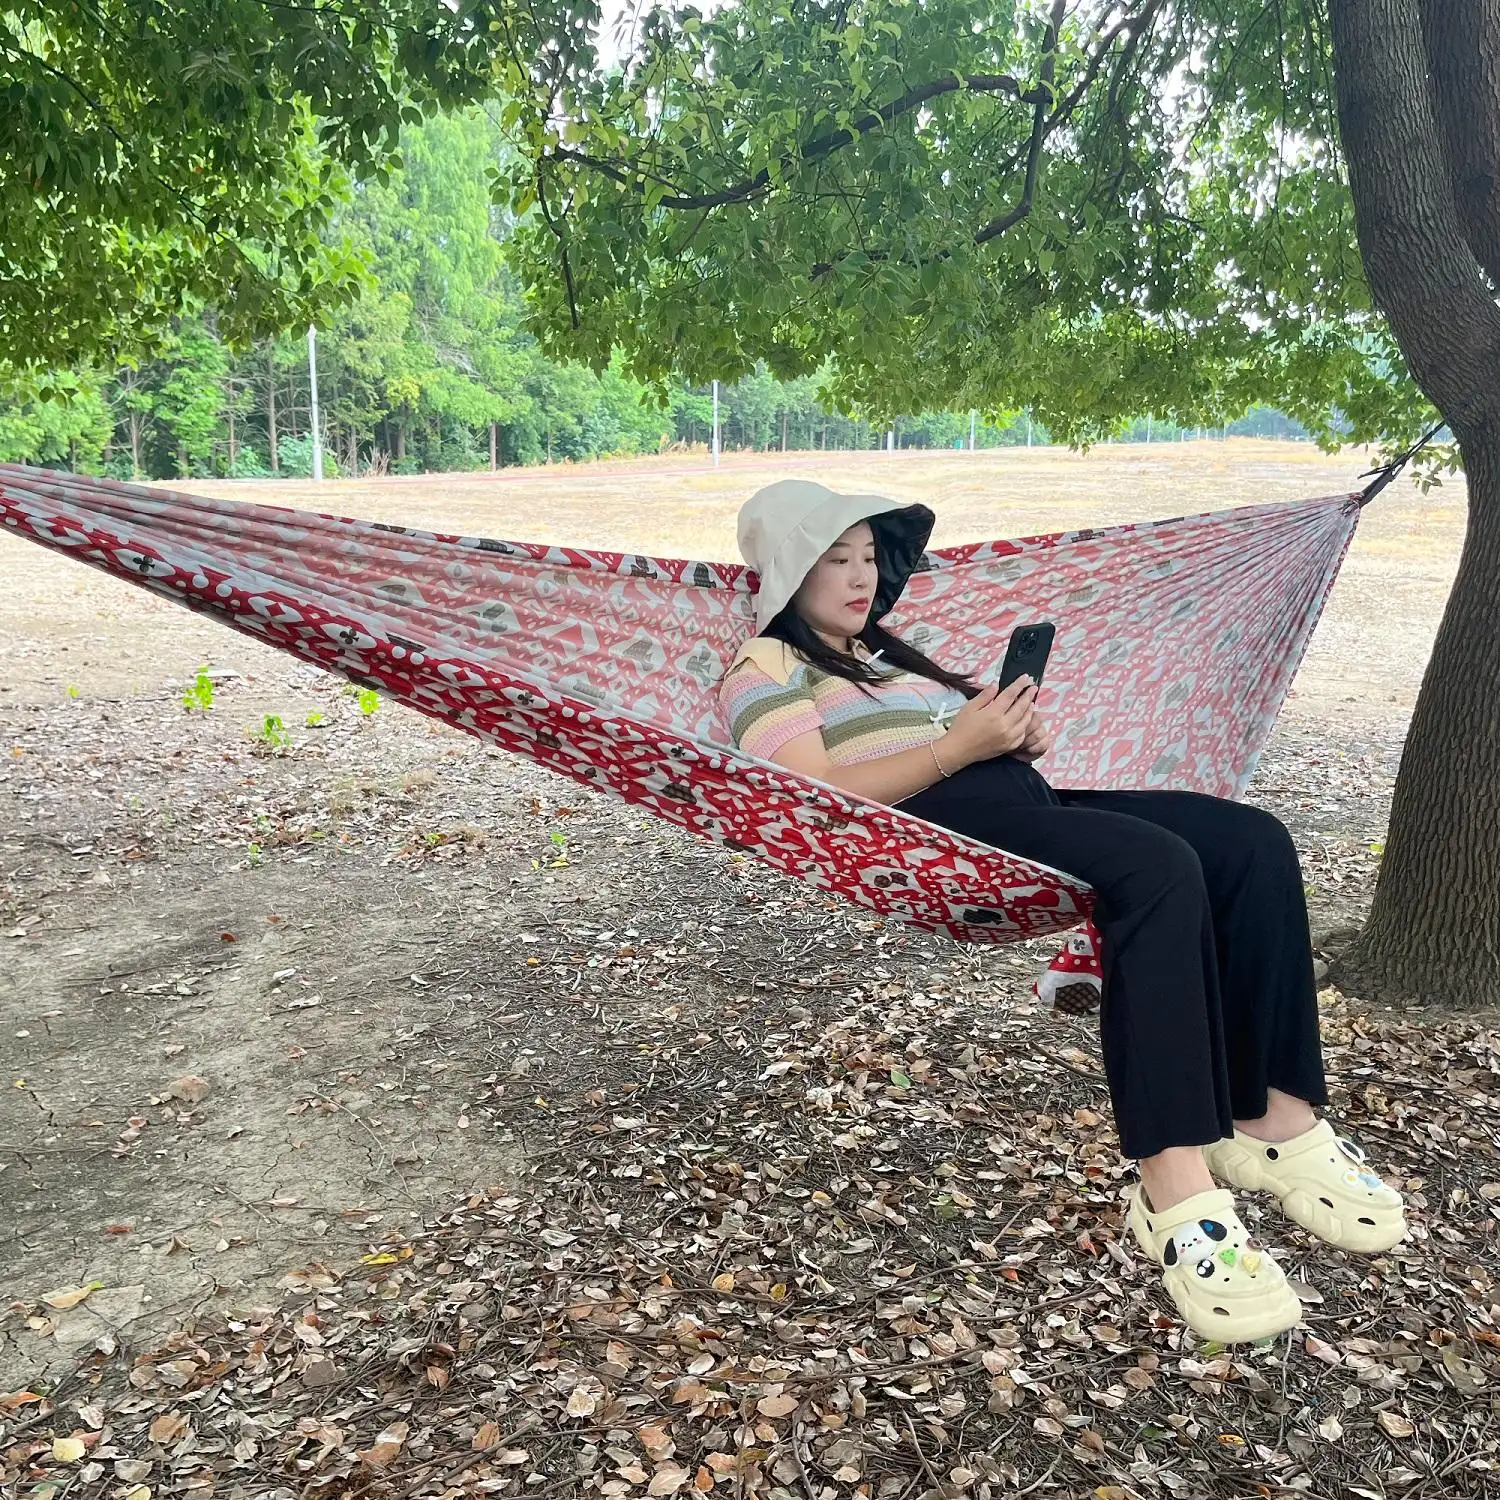 Mydays Chaise balançoire d'extérieur imperméable à l'eau Hamac de camping portable en tissu parachute pour se divertir et se détendre dans le parc